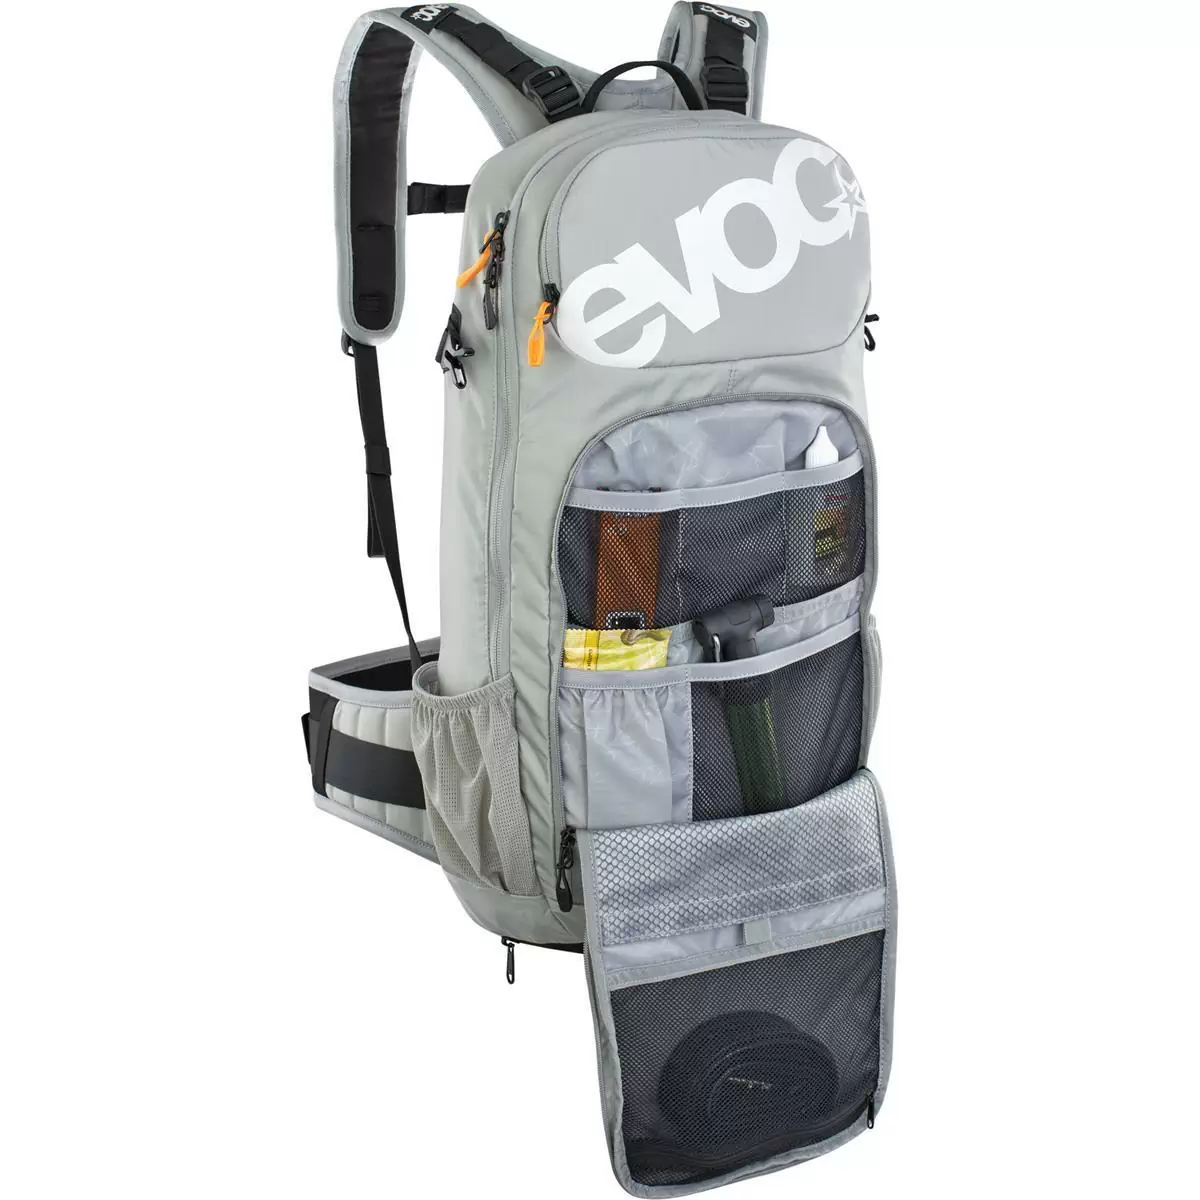 FR Enduro-Rucksack mit steingrauem Rückenprotektor, 16 Liter, Größe S #1